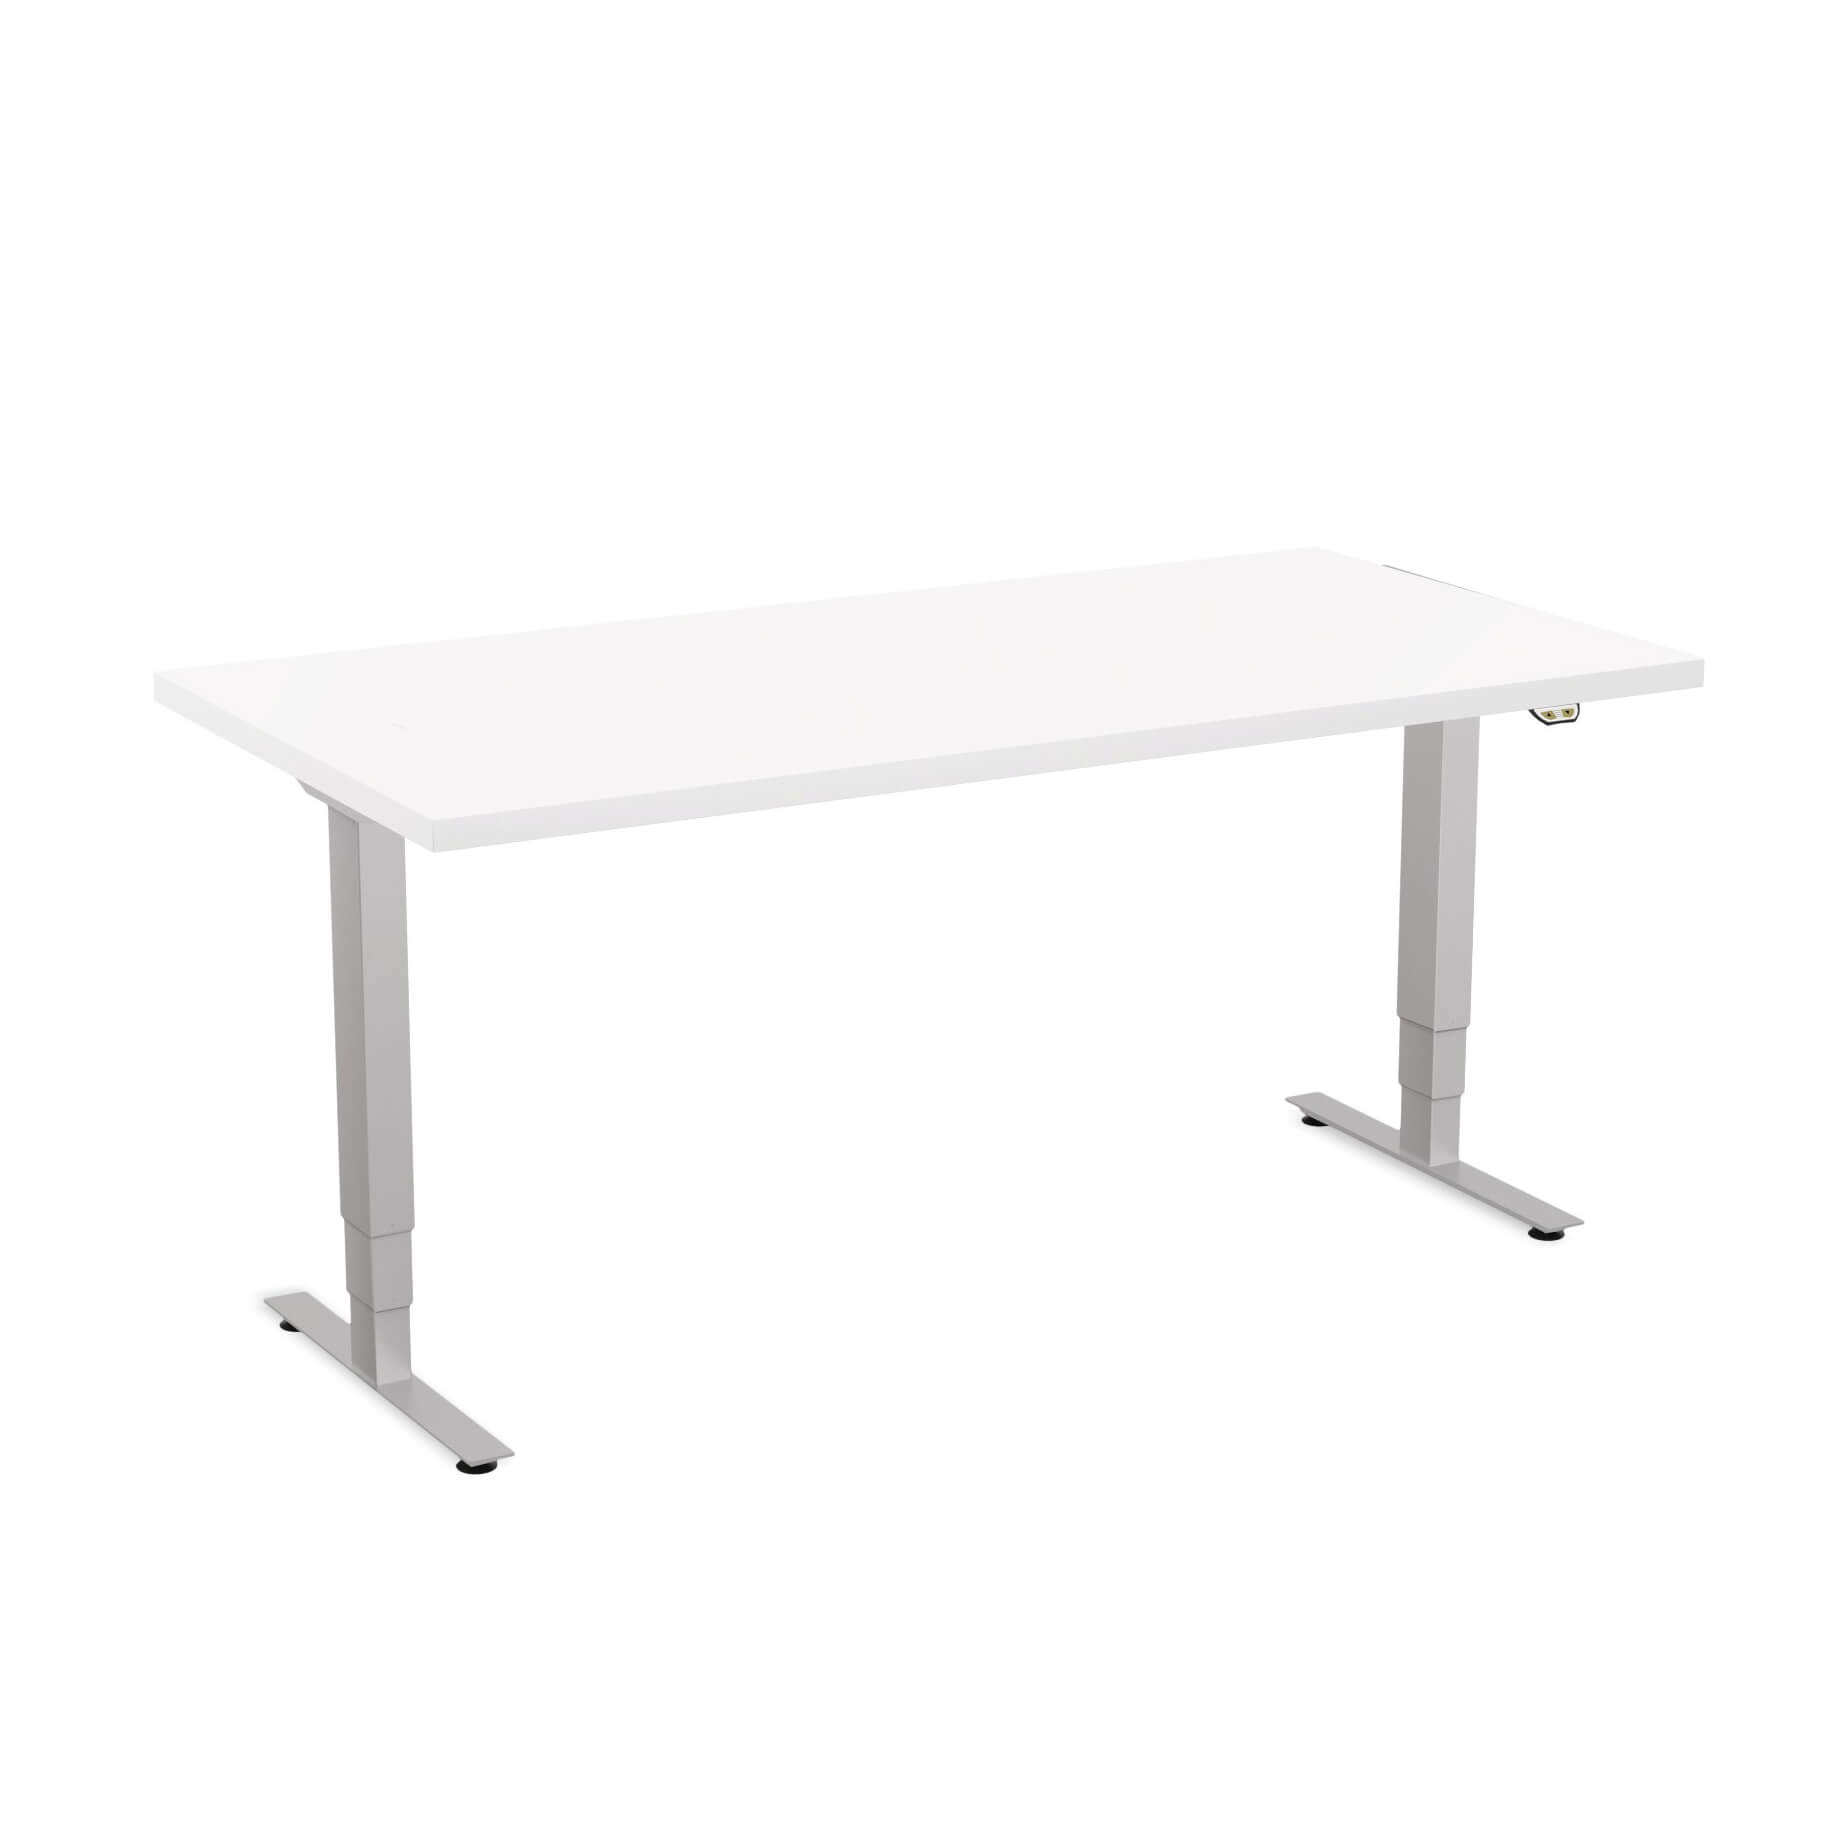 Sit stand desk adjustable CUB 1D PATR 3060 WH EPS